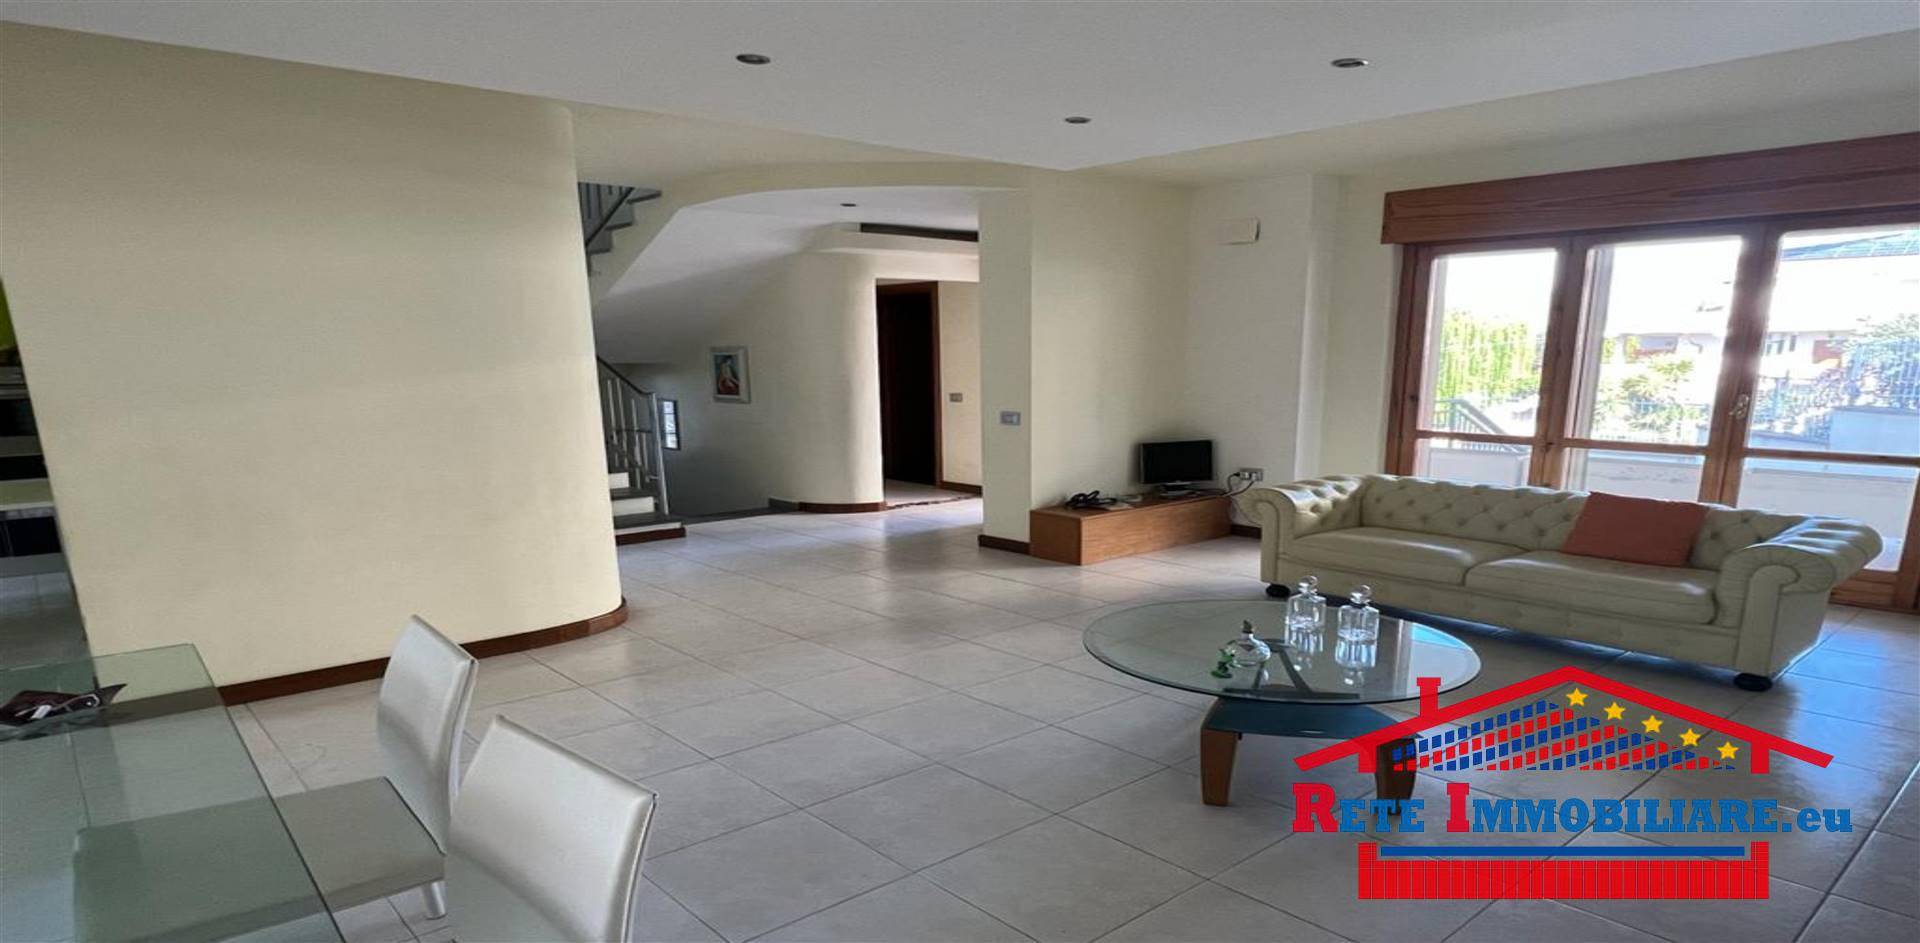 Villa Bifamiliare in vendita a Zumpano, 8 locali, zona la, prezzo € 280.000 | PortaleAgenzieImmobiliari.it